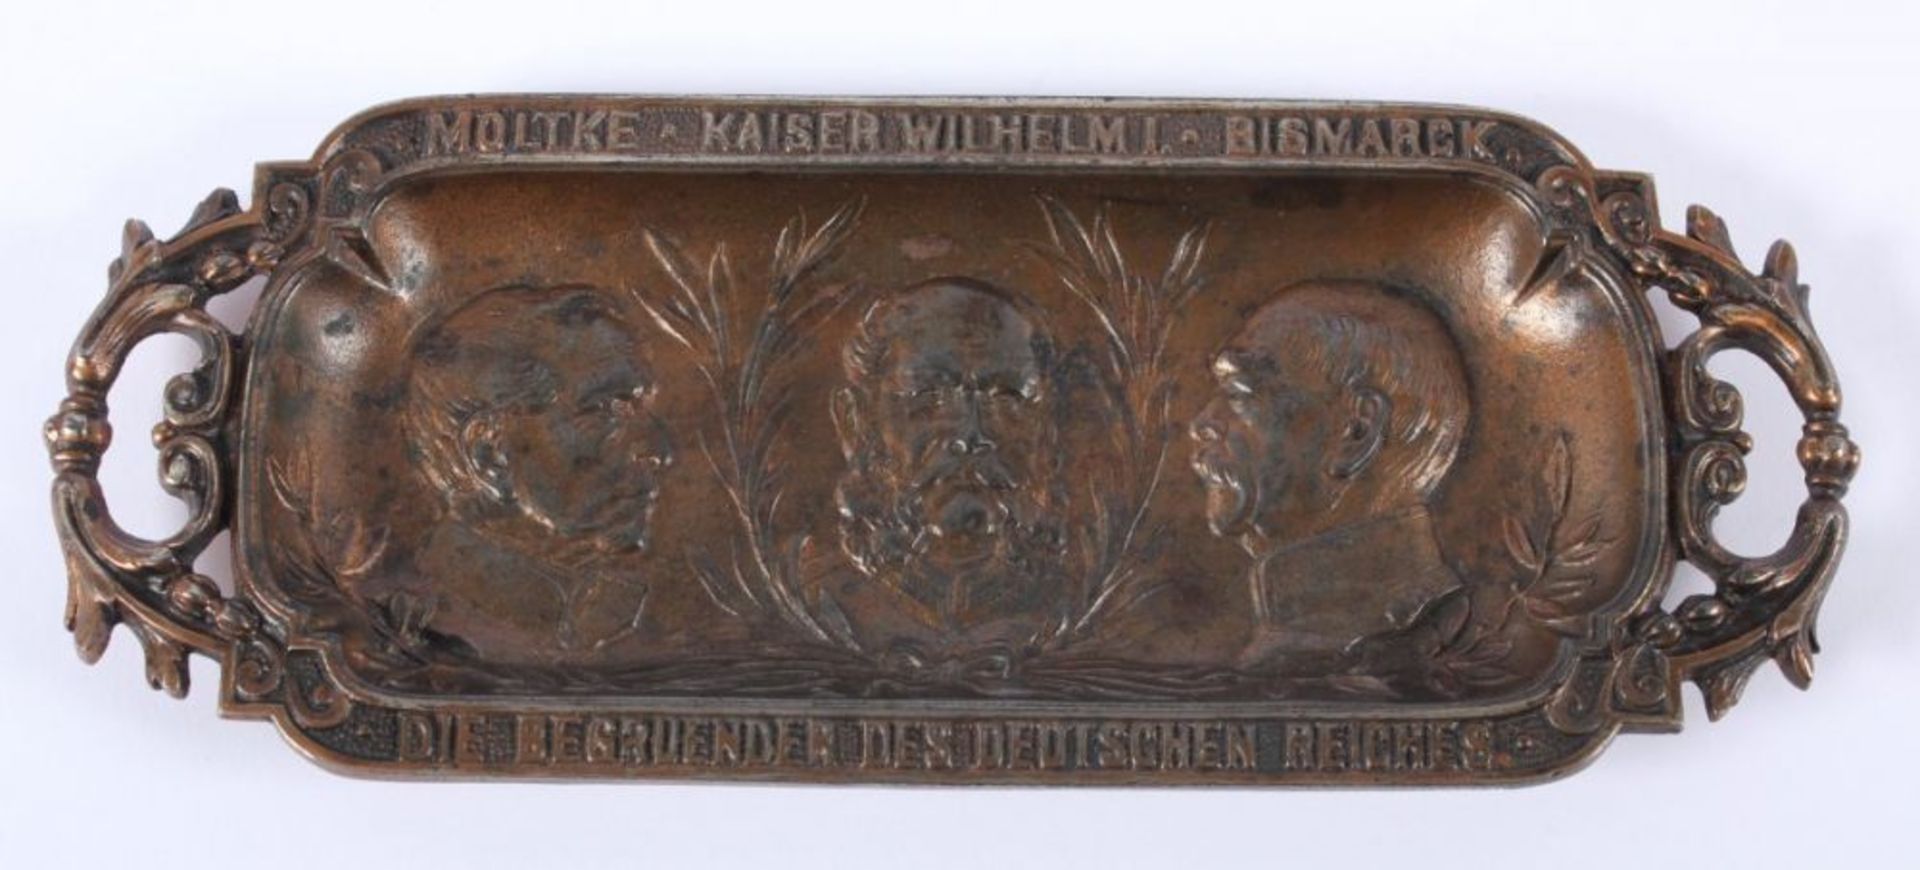 PATRIOTISCHE ABLAGESCHALE, mit Portraits von Moltke, Kaiser Wilhelm I. und Bismarck ("Die Begruender